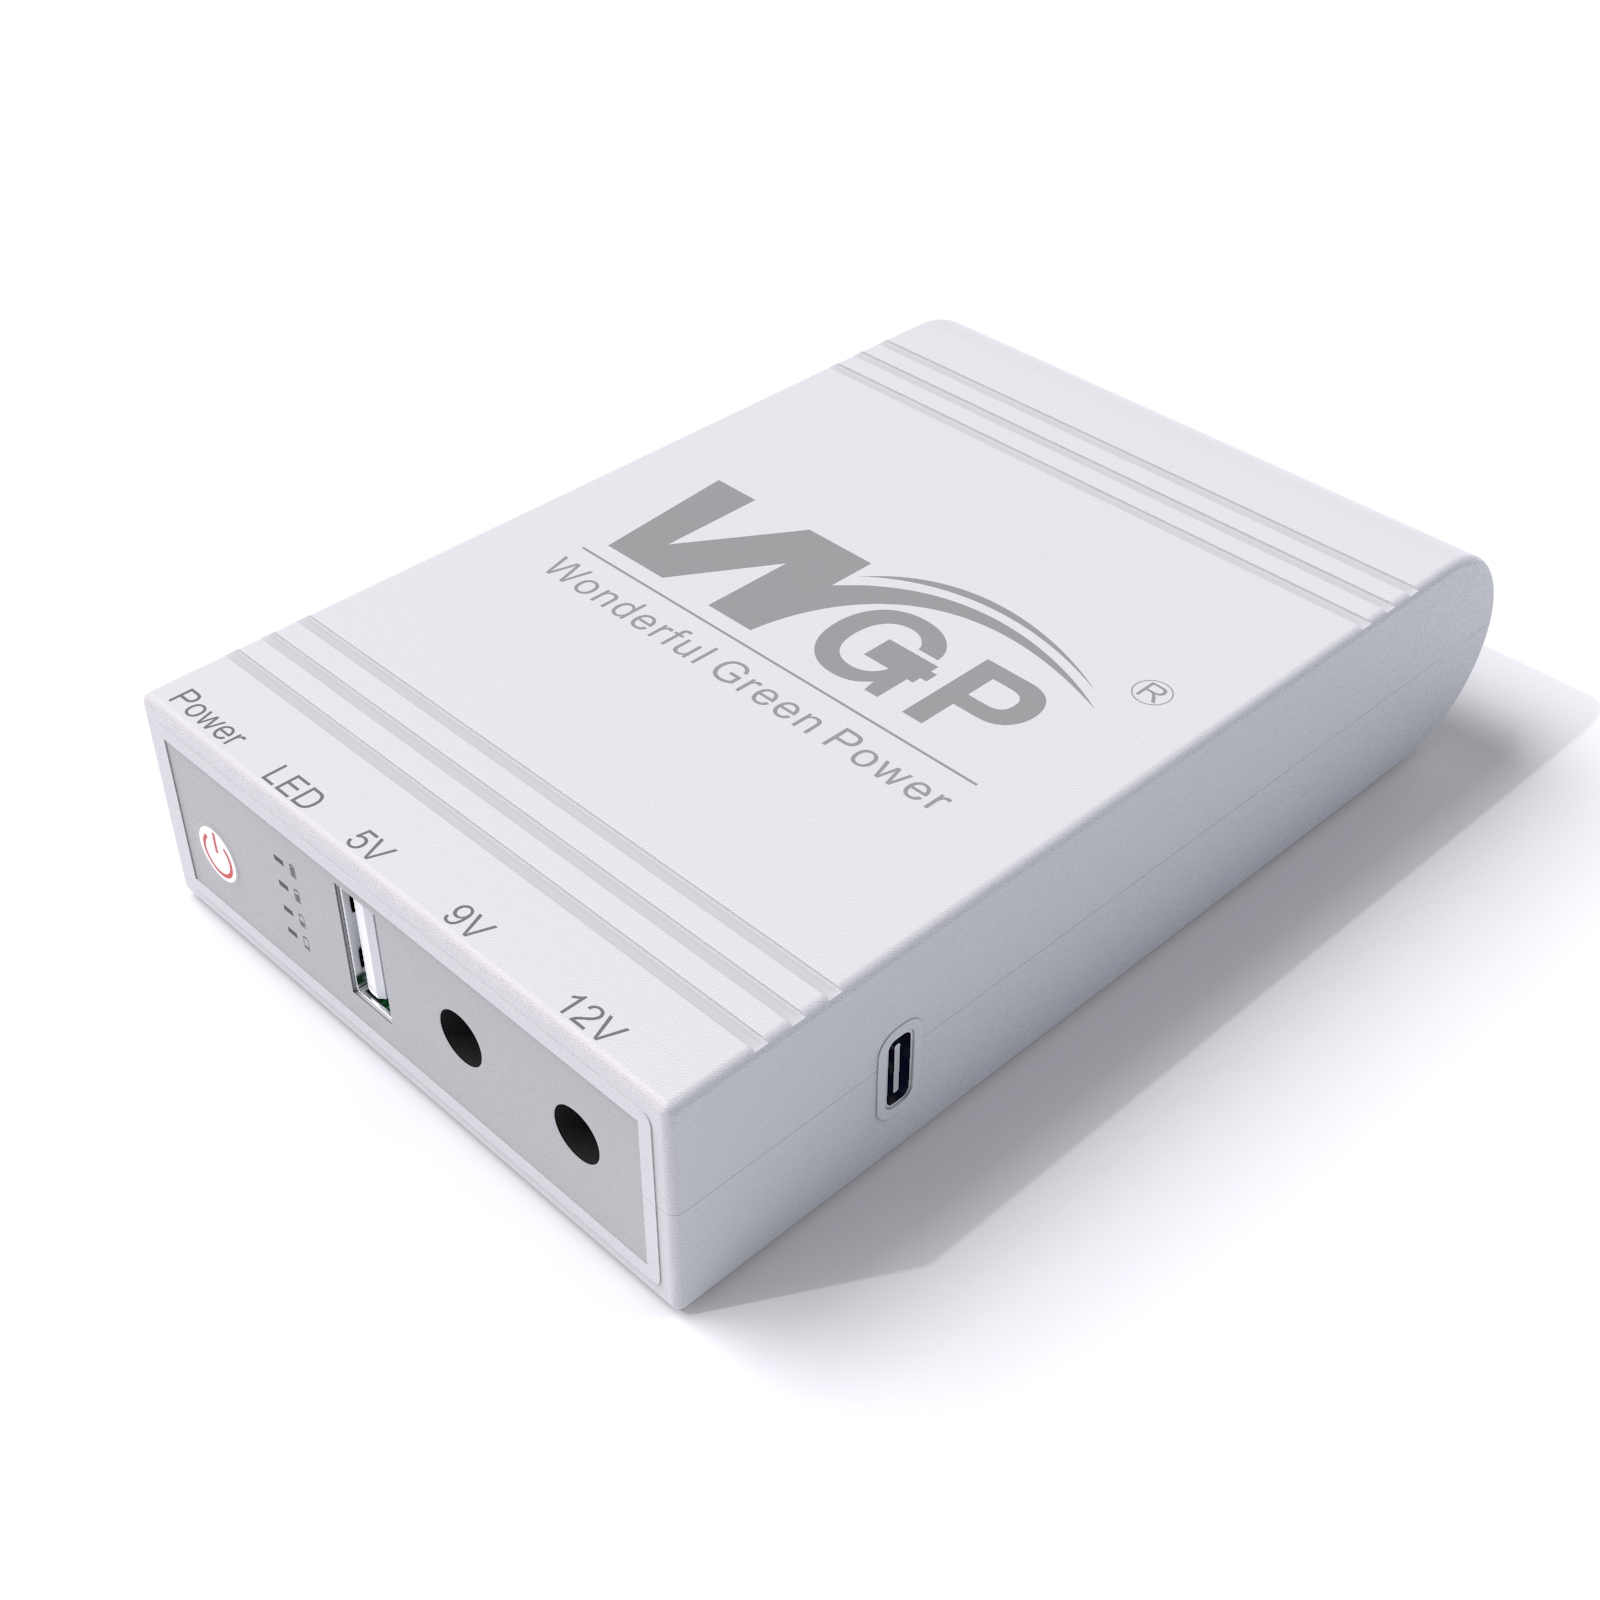 WGP 103 mini ups արտադրում է USB5V DC 9V 12v MINI UPS